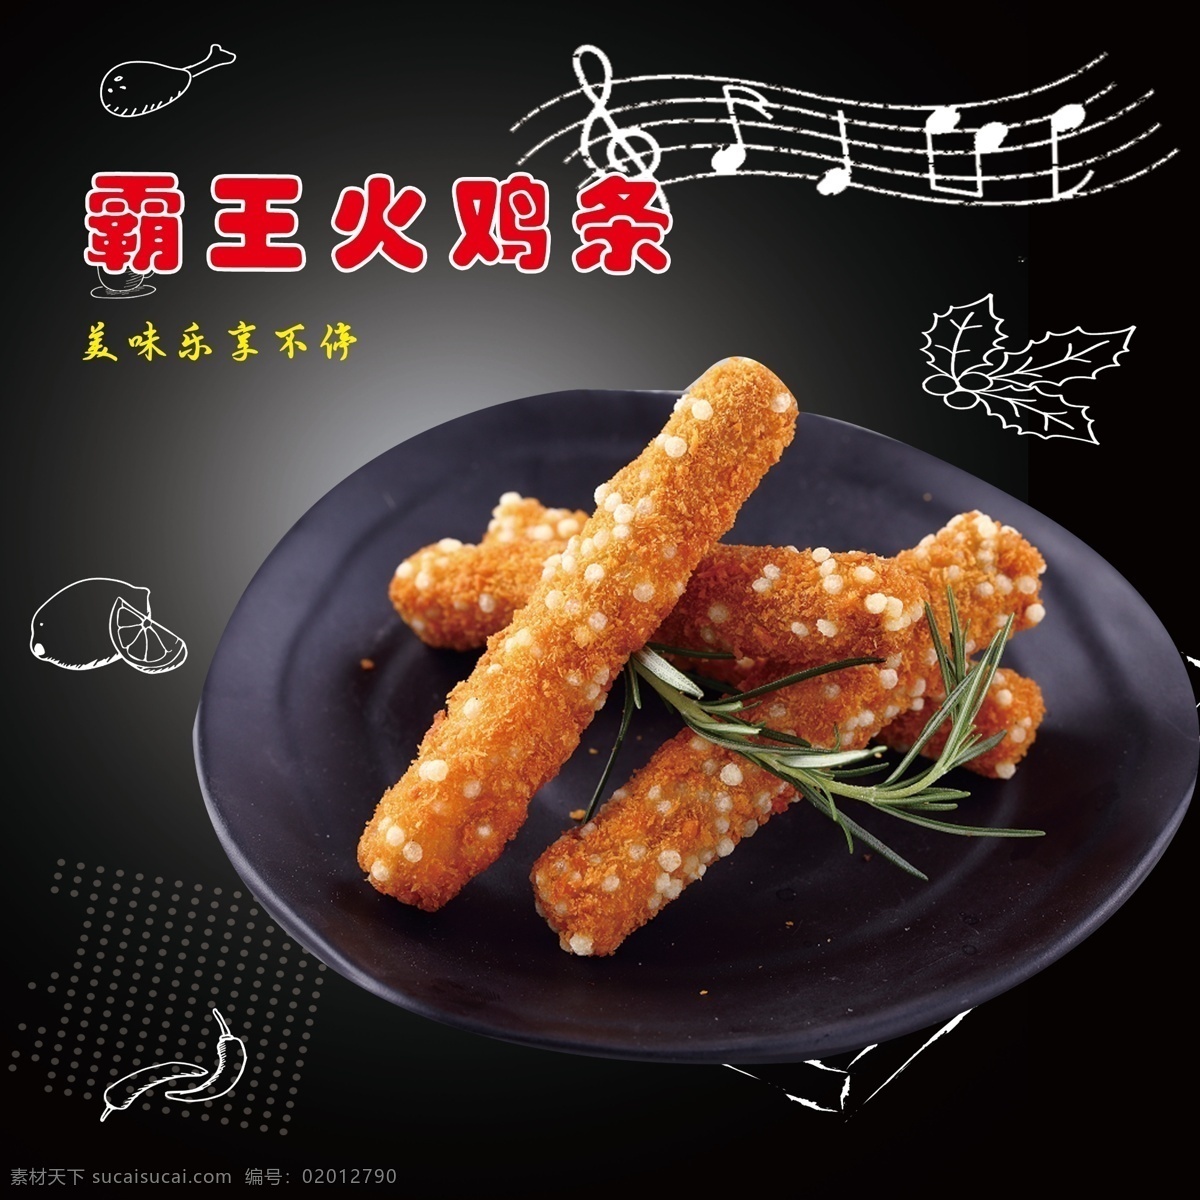 霸王 火鸡 条 小吃 辣椒 宣传海报 美食 餐饮美食 西餐美食 共享共赢